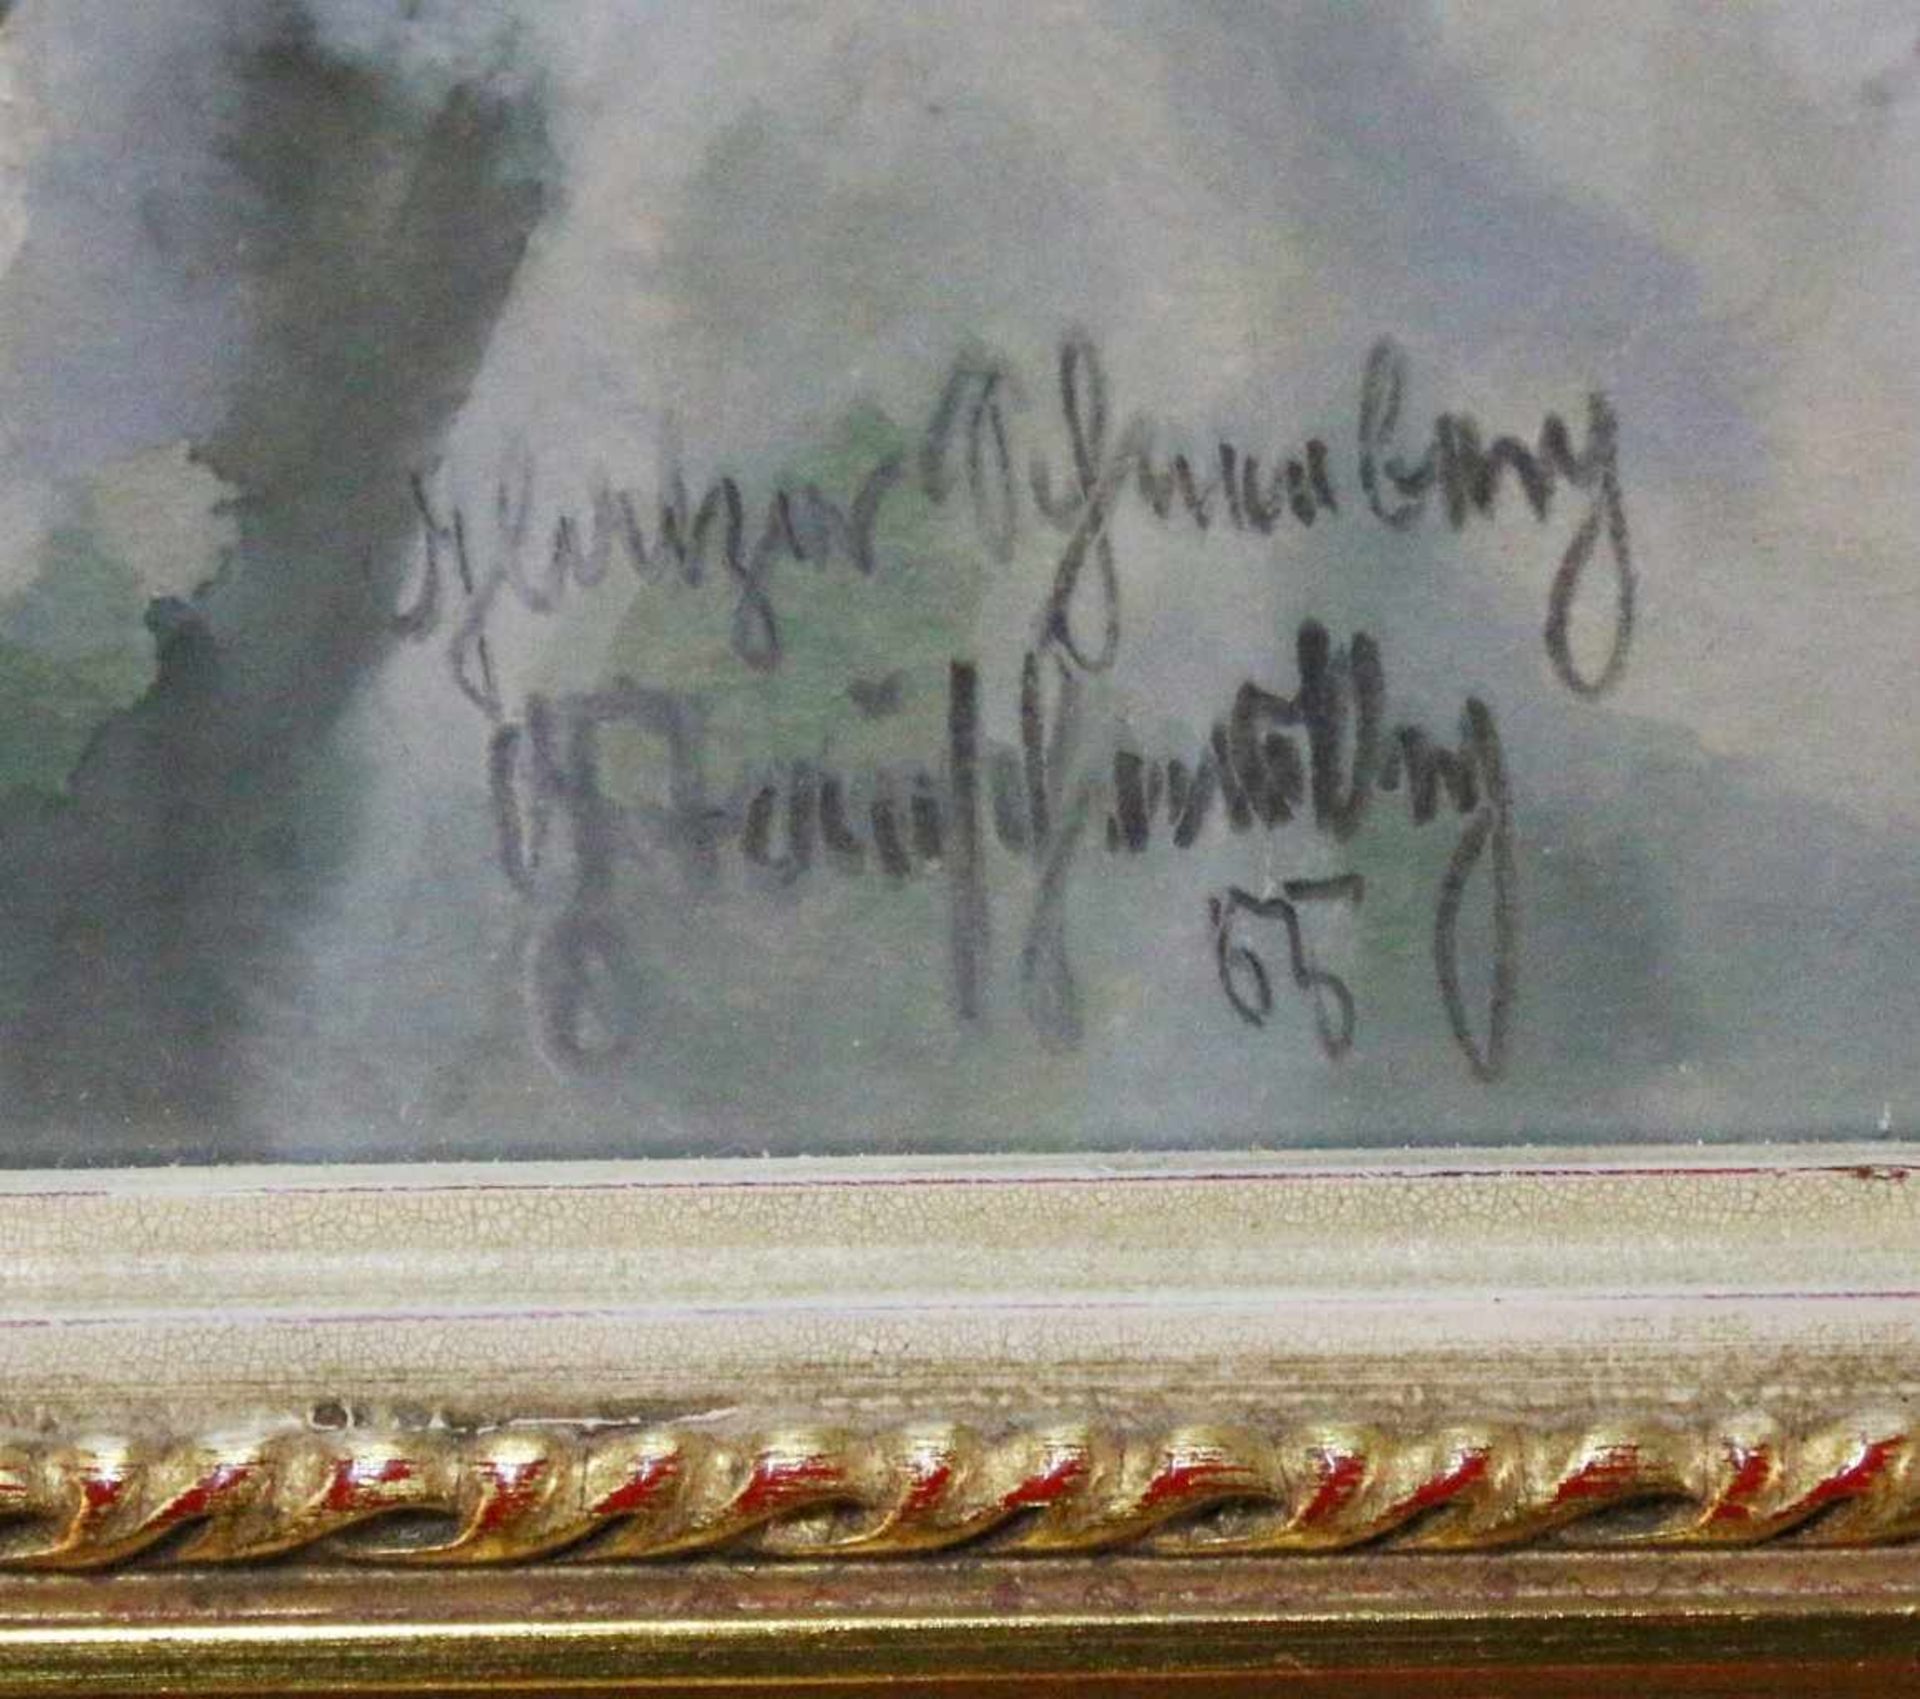 Gemälde - Glatzer Schneeberg Aquarell auf Karton, unten links bezeichnet, datiert "55" und - Image 3 of 3